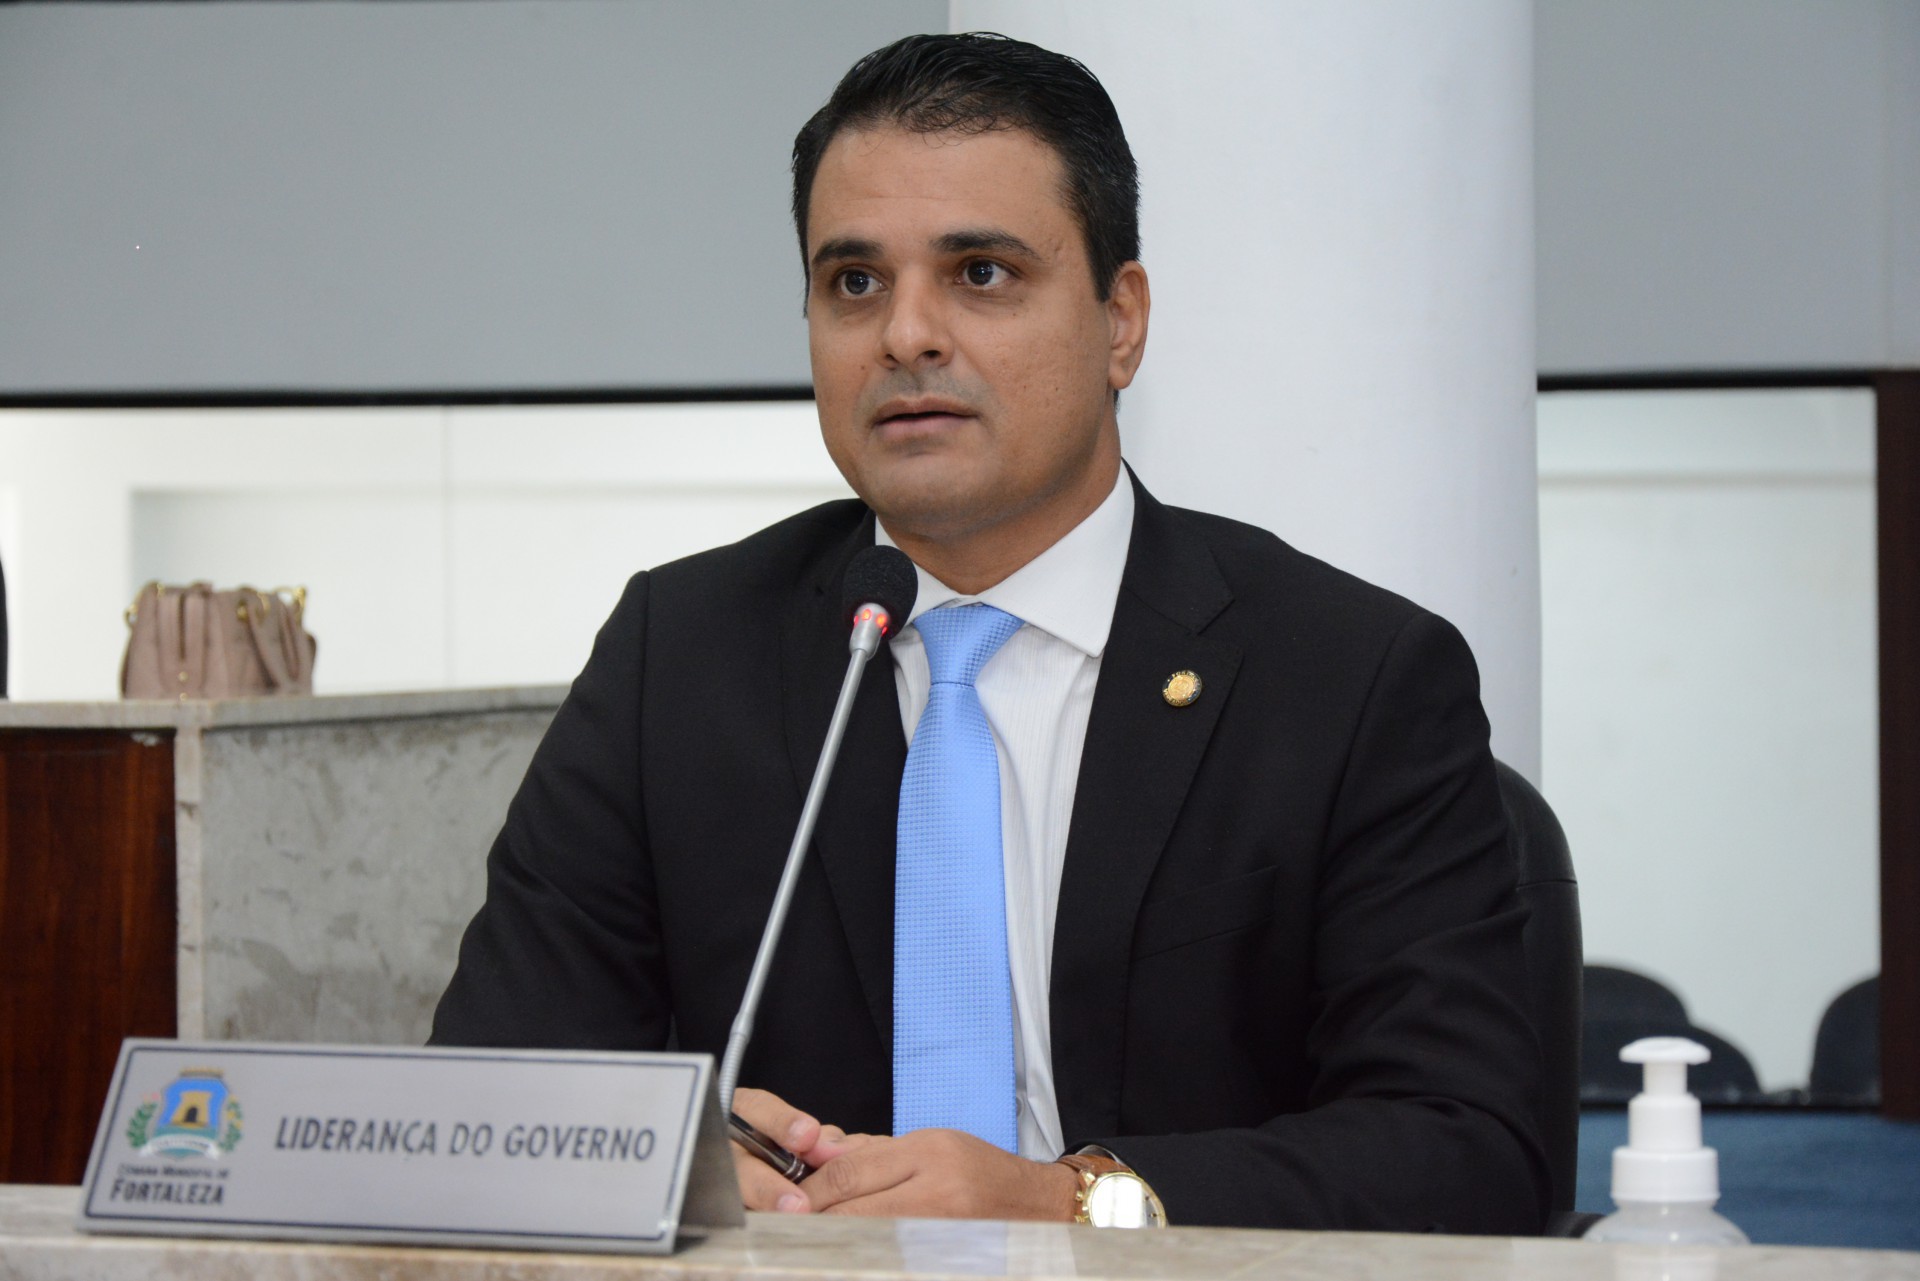 VEREADOR Gardel Rolim, líder do governo Sarto na Câmara